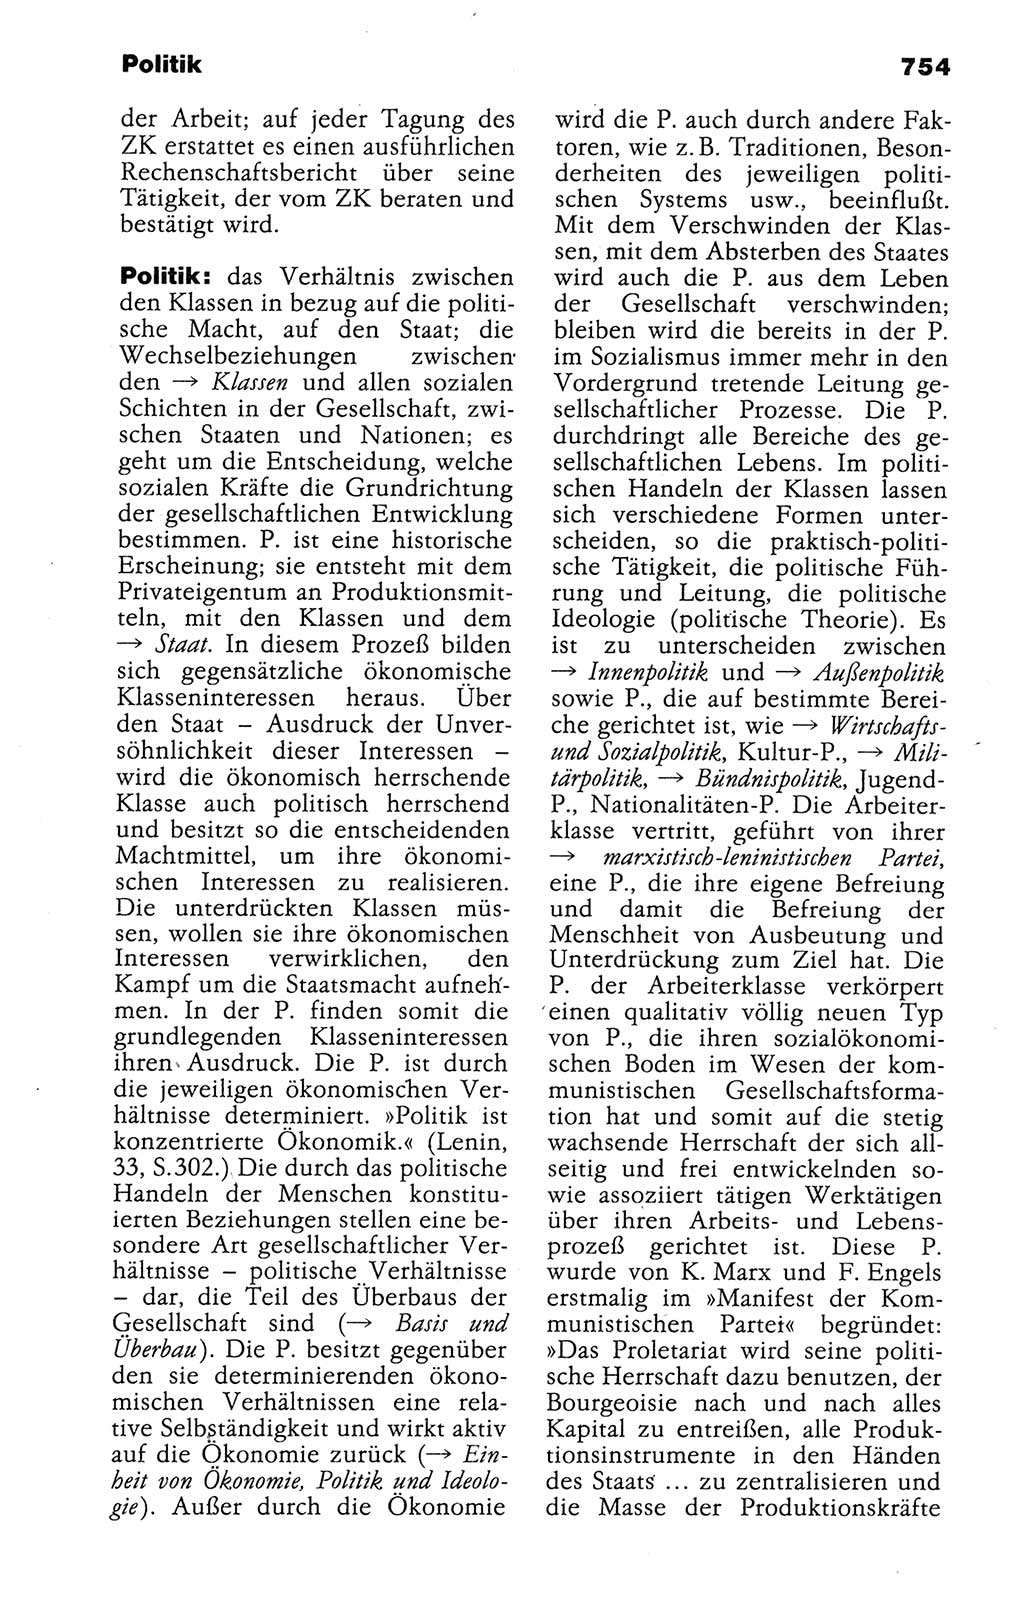 Kleines politisches Wörterbuch [Deutsche Demokratische Republik (DDR)] 1988, Seite 754 (Kl. pol. Wb. DDR 1988, S. 754)